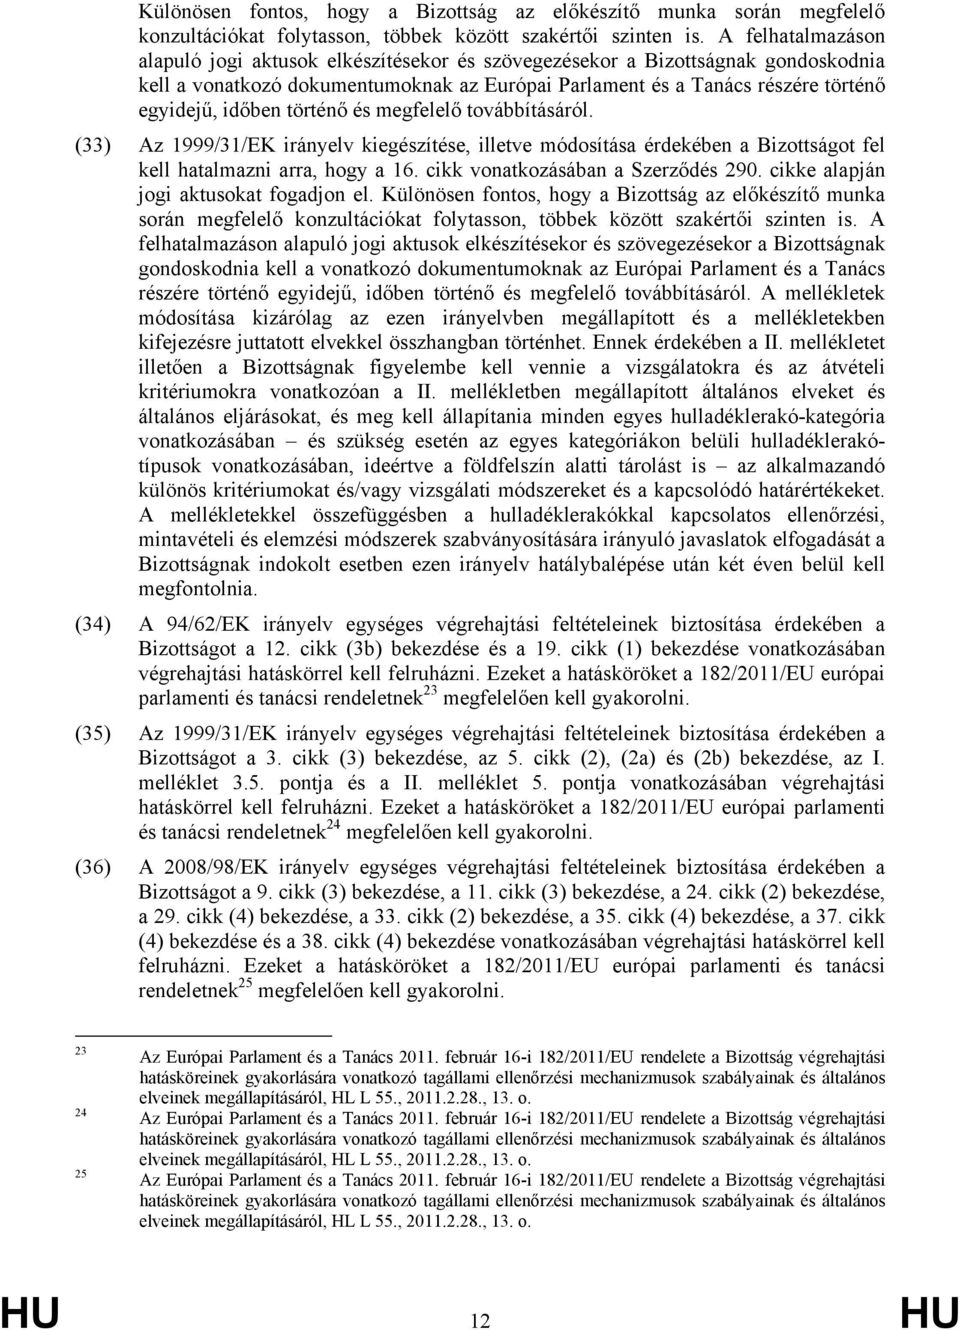 történő és megfelelő továbbításáról. (33) Az 1999/31/EK irányelv kiegészítése, illetve módosítása érdekében a Bizottságot fel kell hatalmazni arra, hogy a 16. cikk vonatkozásában a Szerződés 290.